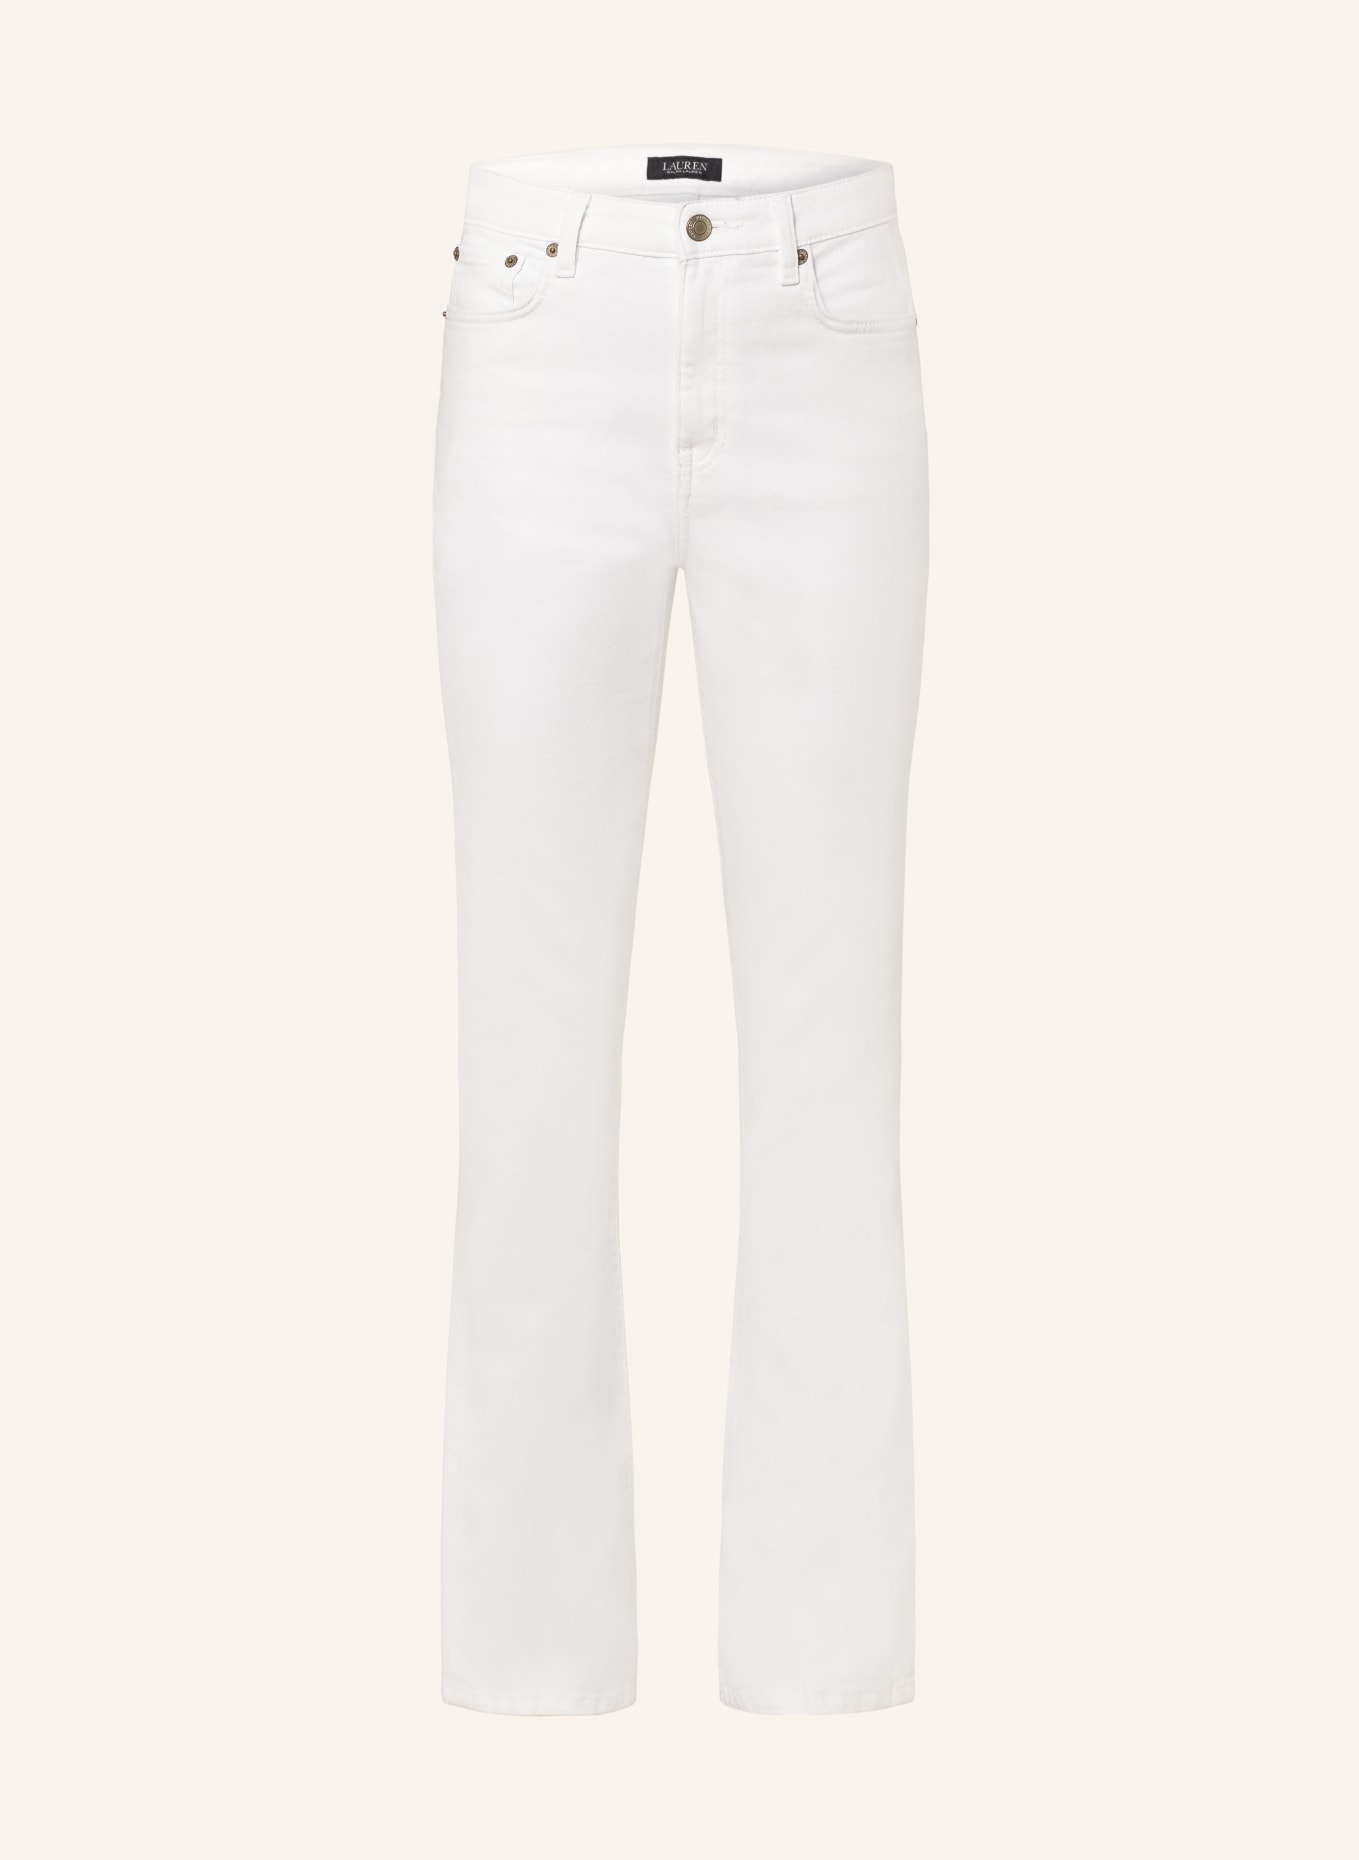 LAUREN RALPH LAUREN Jeans, Farbe: 001 WHITE WSH (Bild 1)